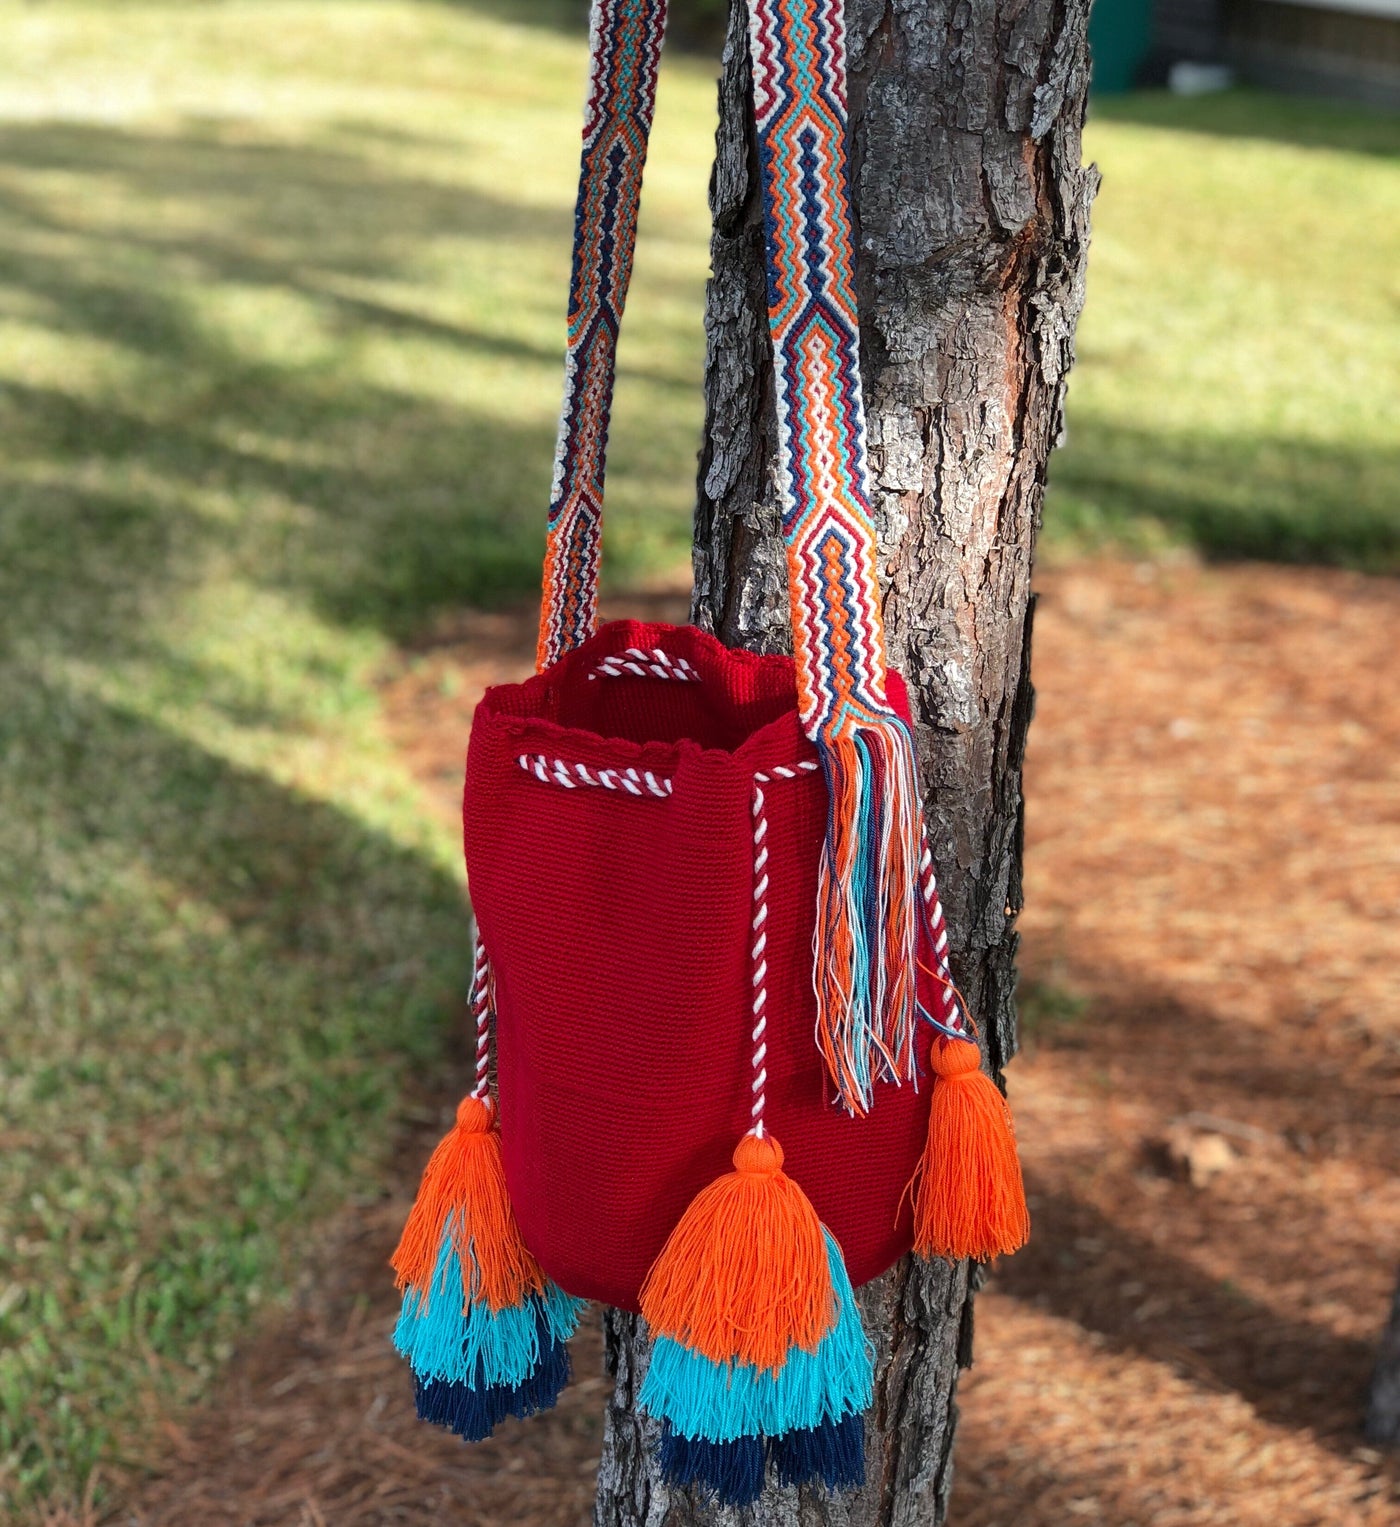 Colorful Crochet Tassel Bags - Desert Sunset Crochet Boho Bag with Tassels - Crossbody Bucket Bag 